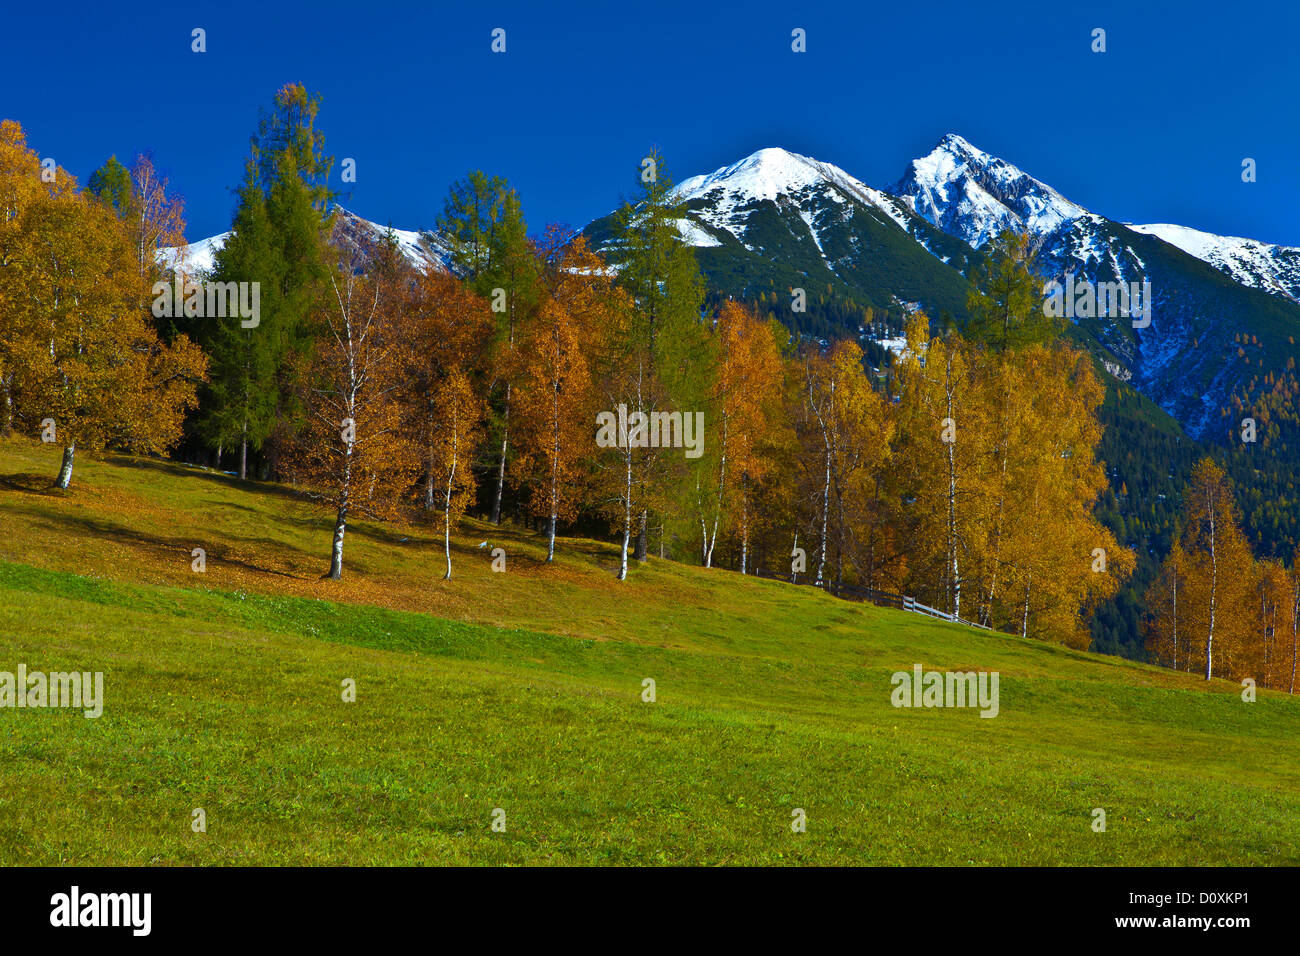 Austria, Europe, Tyrol, Tirol, Seefeld, Reither Spitzer, Reither, point, peak, Karwendel, mountain, meadow, trees, birches, autu Stock Photo